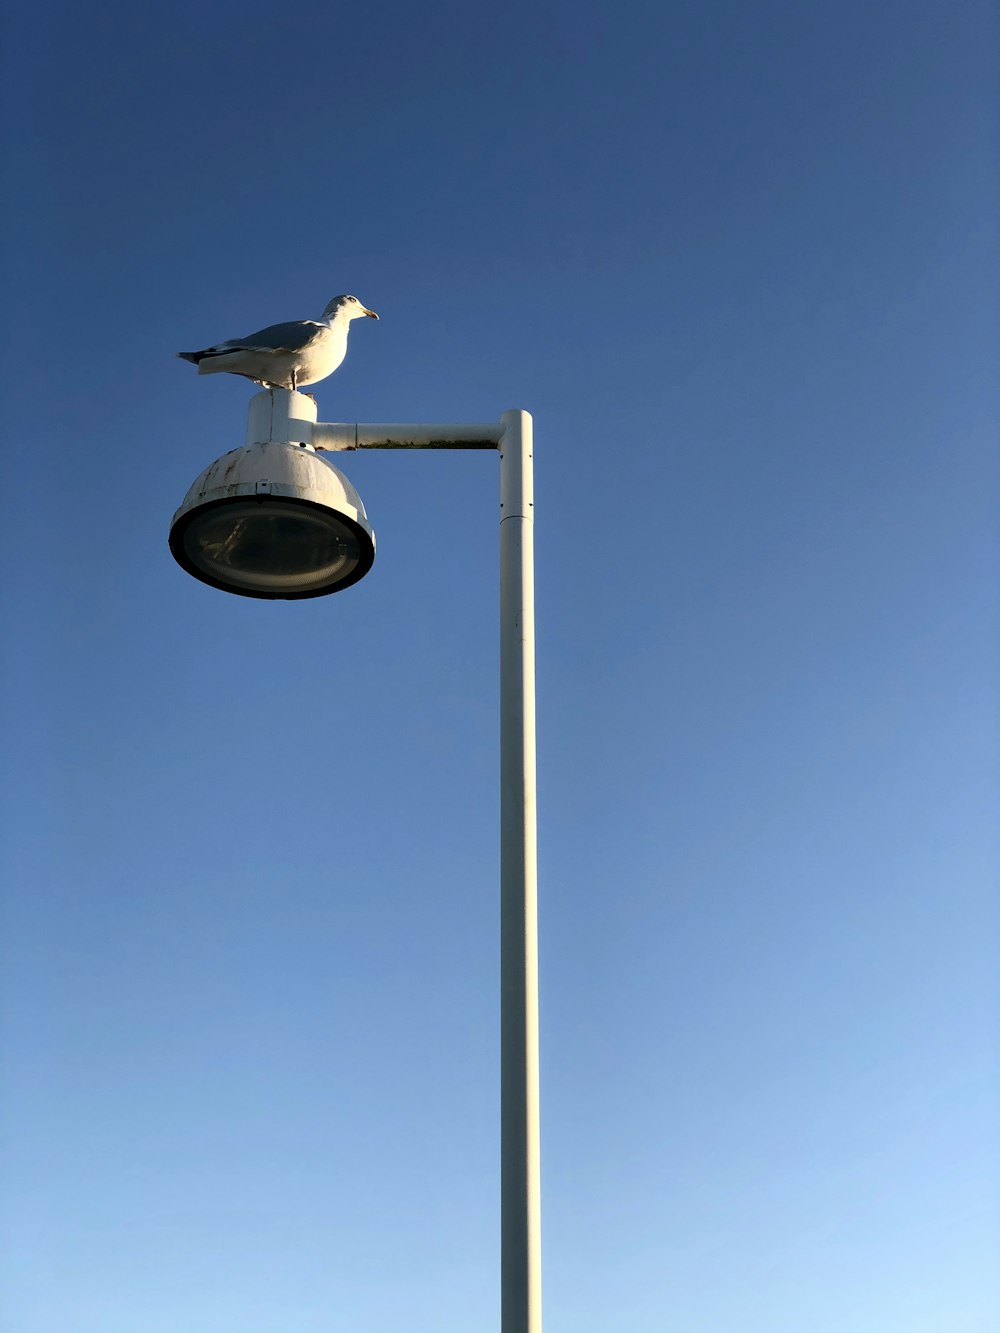 white bird on gray street light during daytime